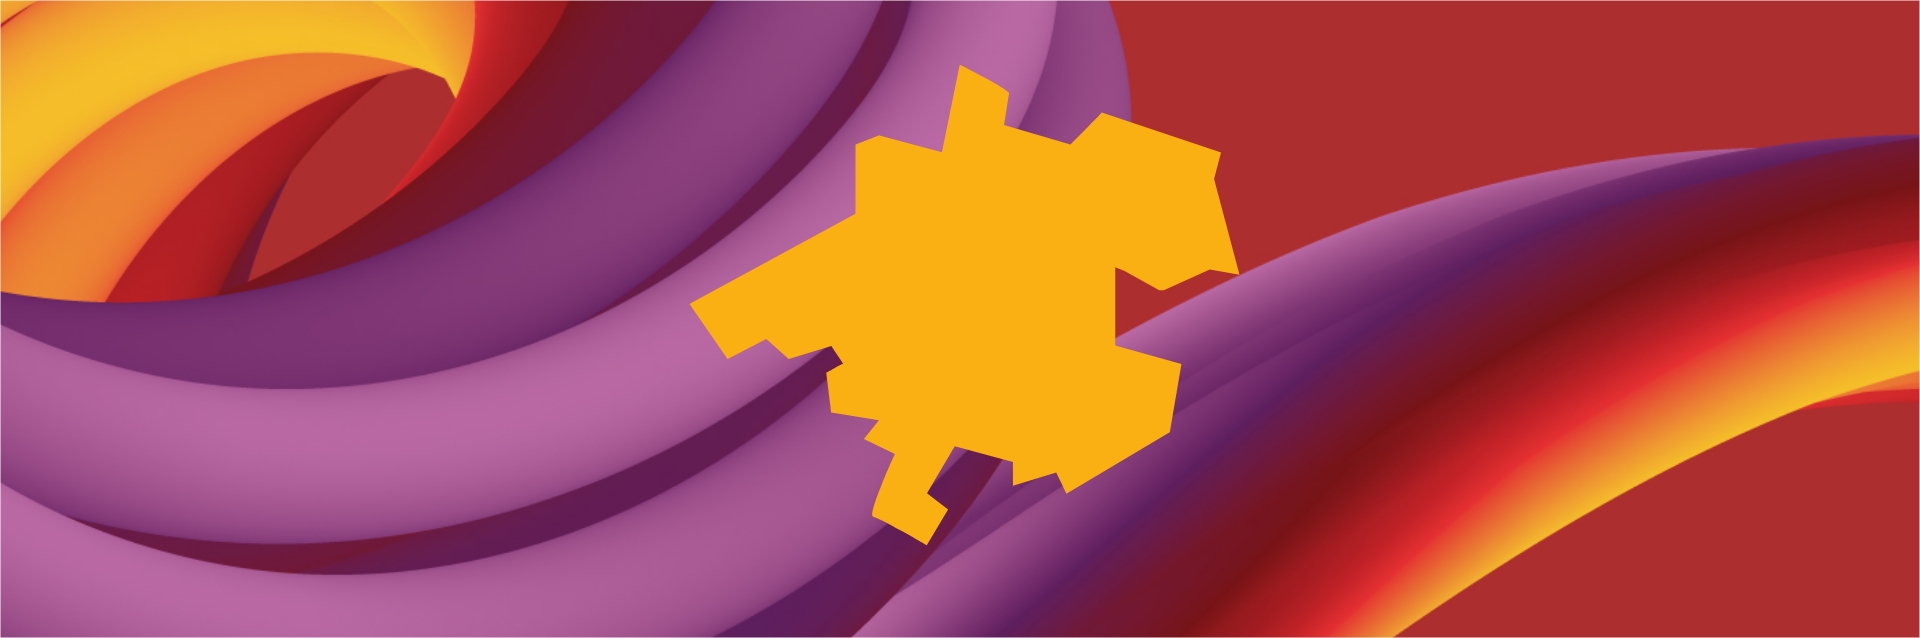 Gelb, lila, rote 3D-Grafik mit Oberösterreich